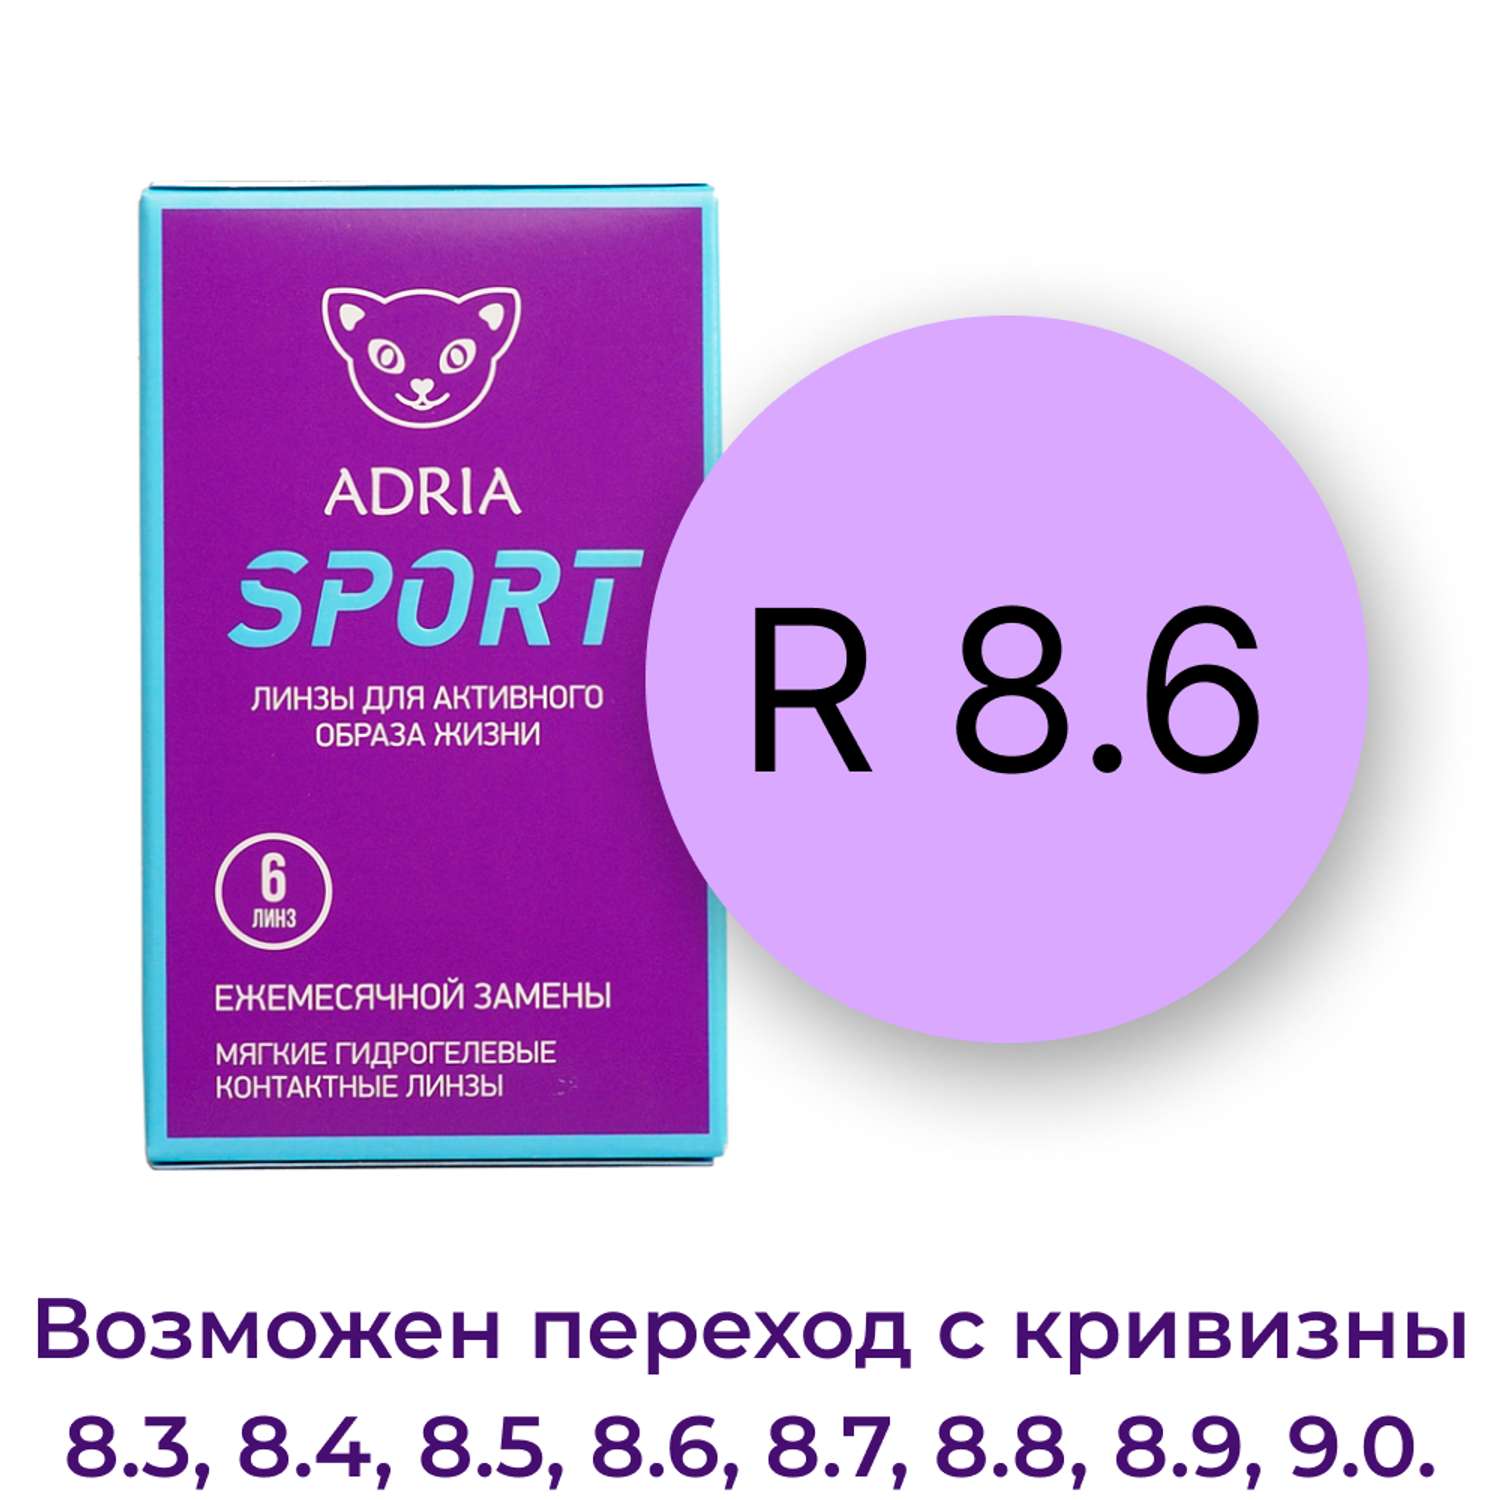 Контактные линзы ADRIA Sport 6 линз R 8.6 -2.75 - фото 3